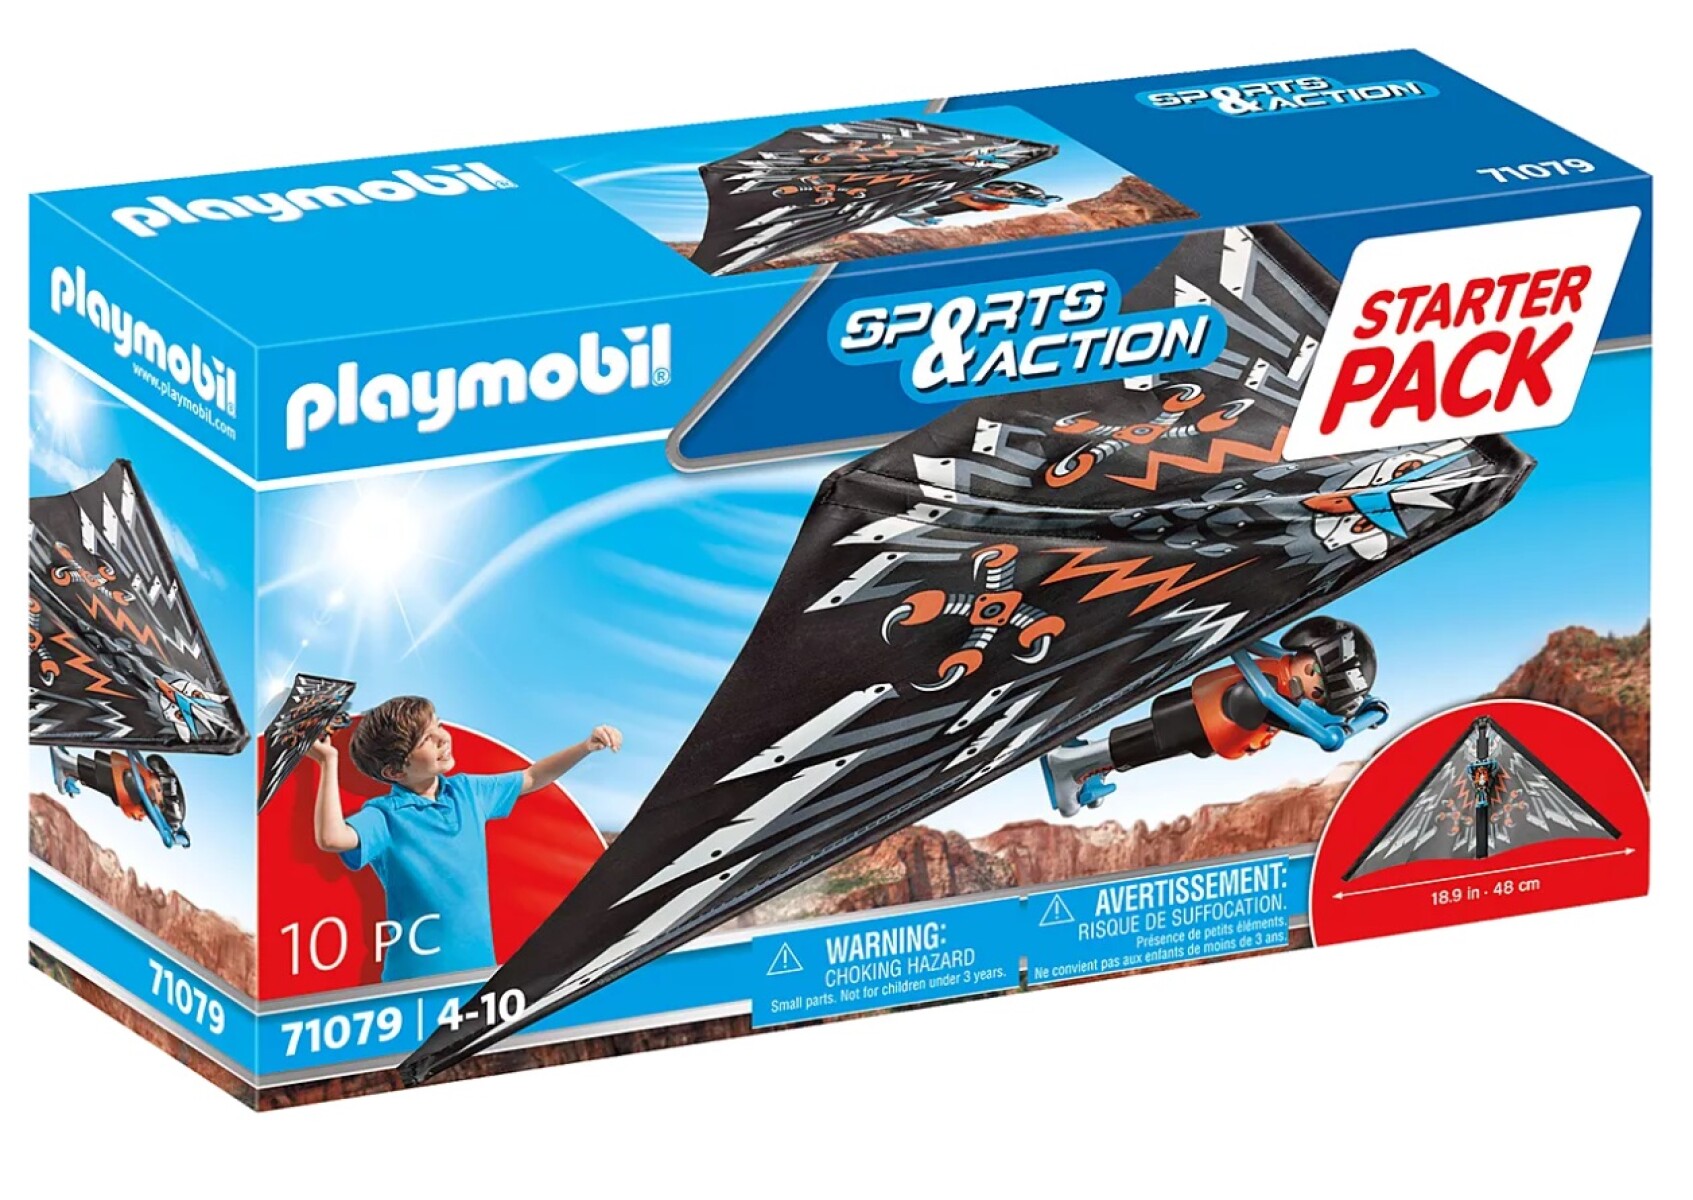 Set Playmobil Ala Delta Starter Pack - 001 